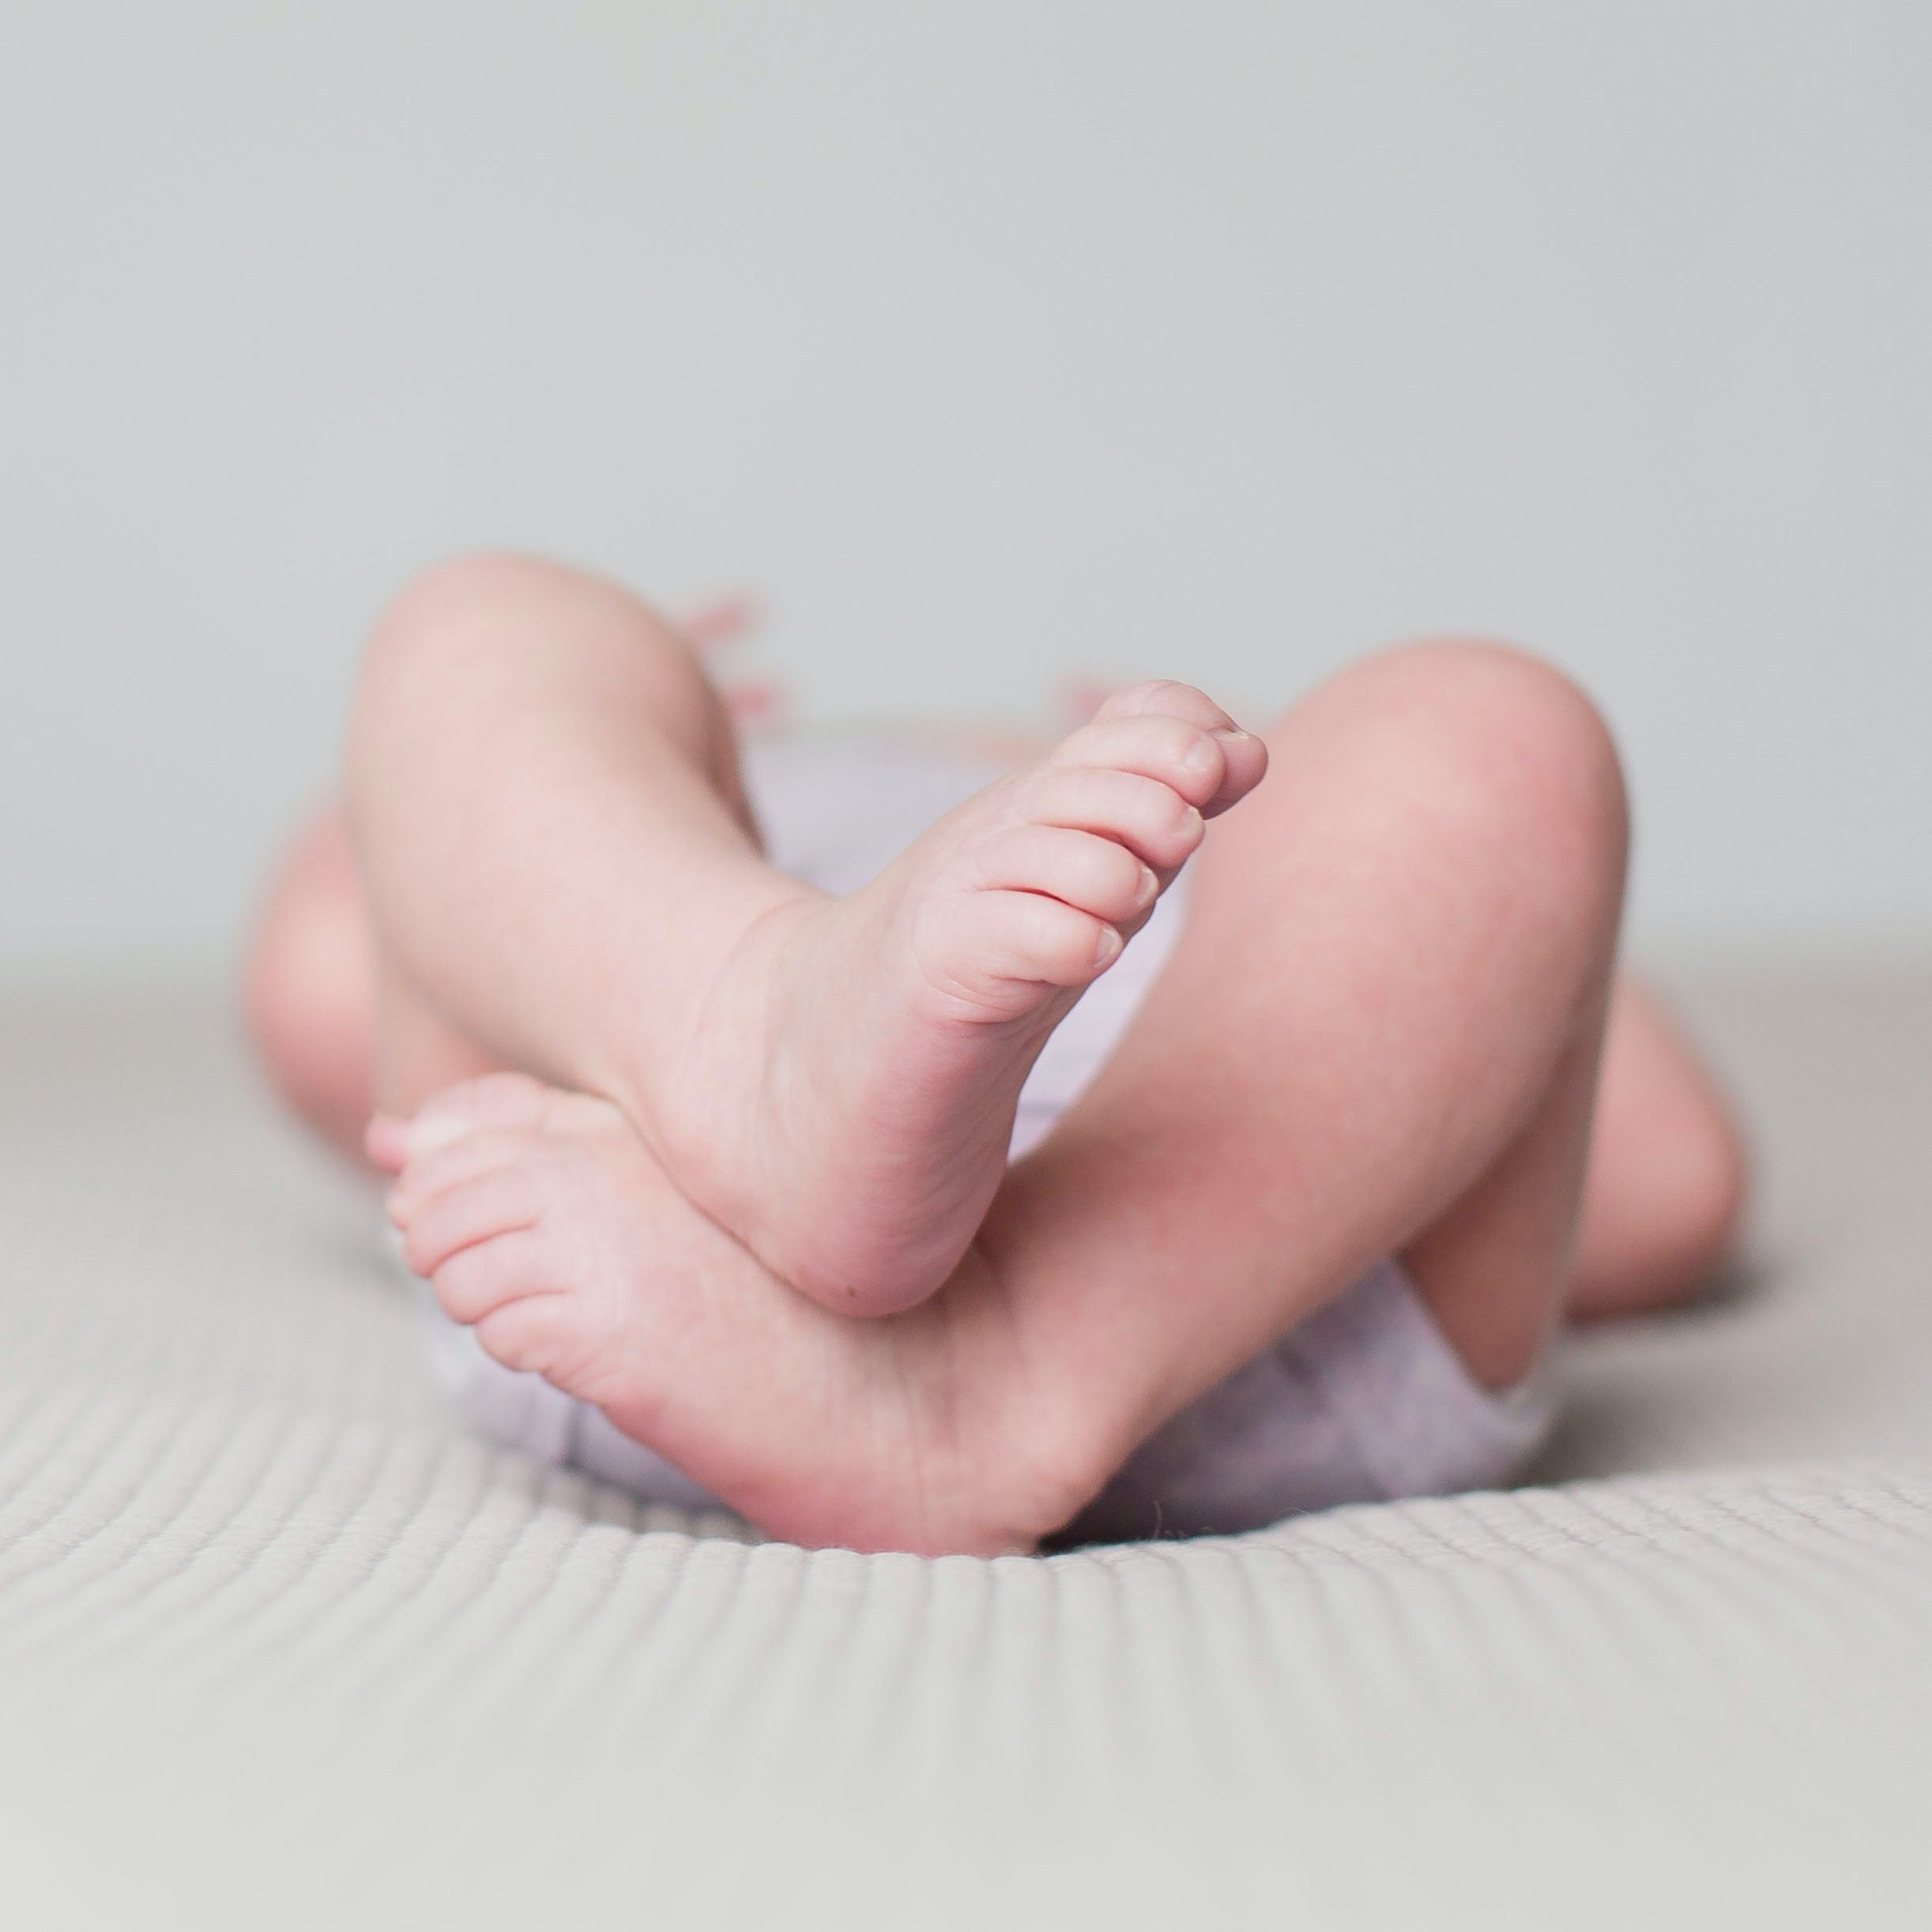 Sicher schlafen: Die richtige Schlafposition für Babys